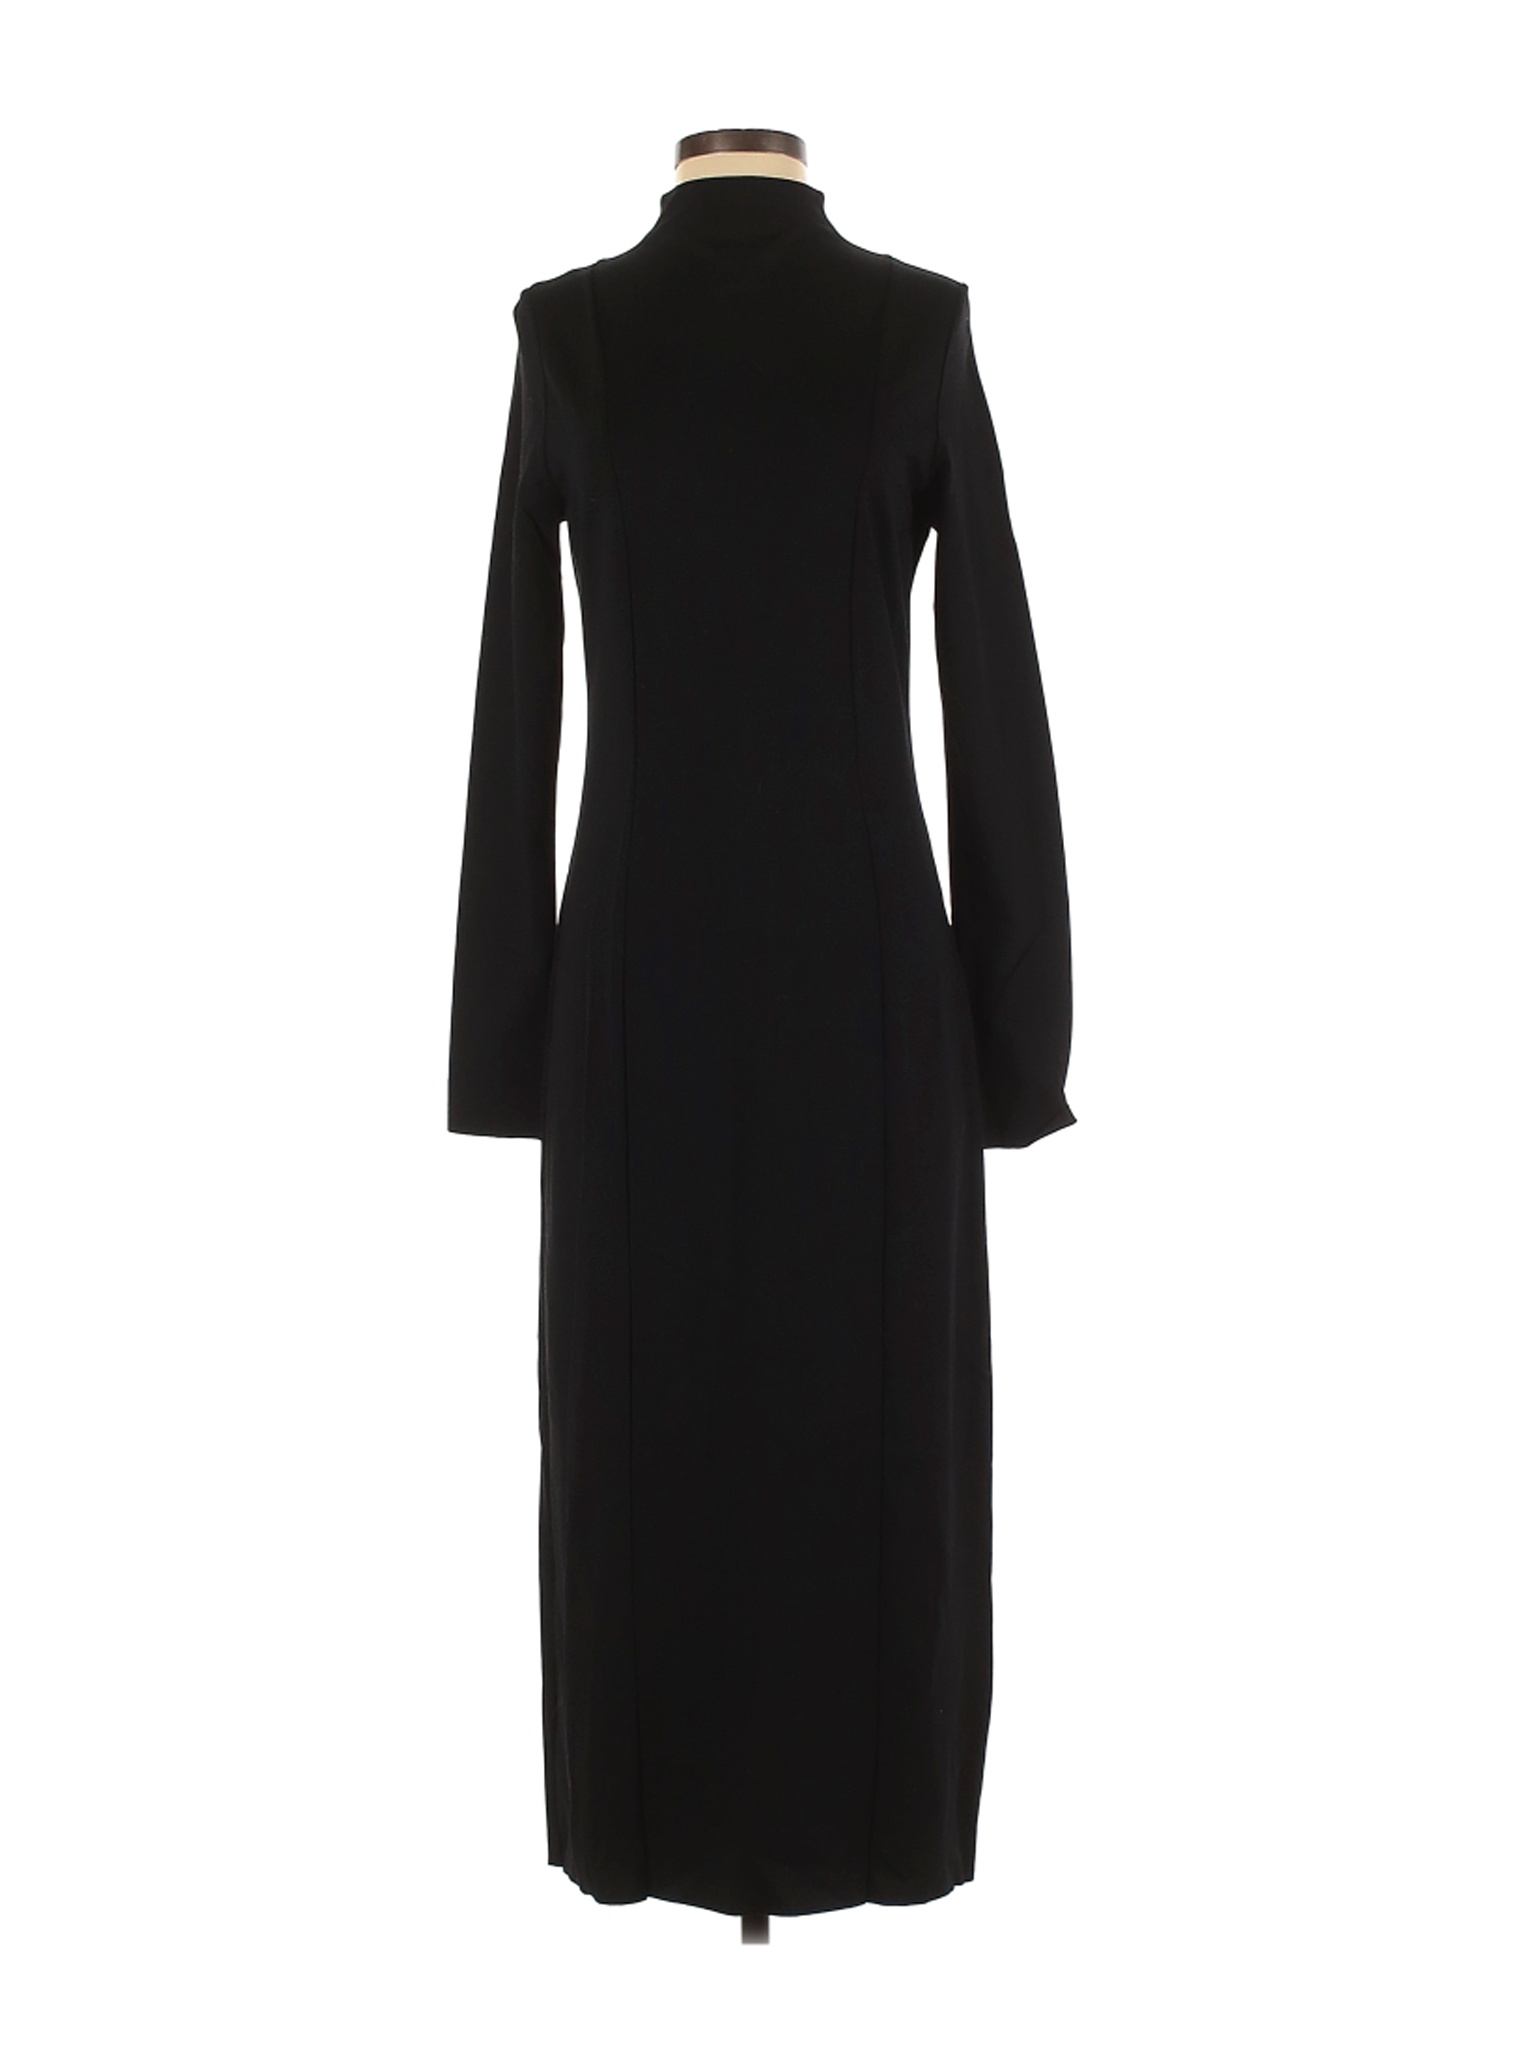 Cos Women Black Casual Dress 34 eur | eBay